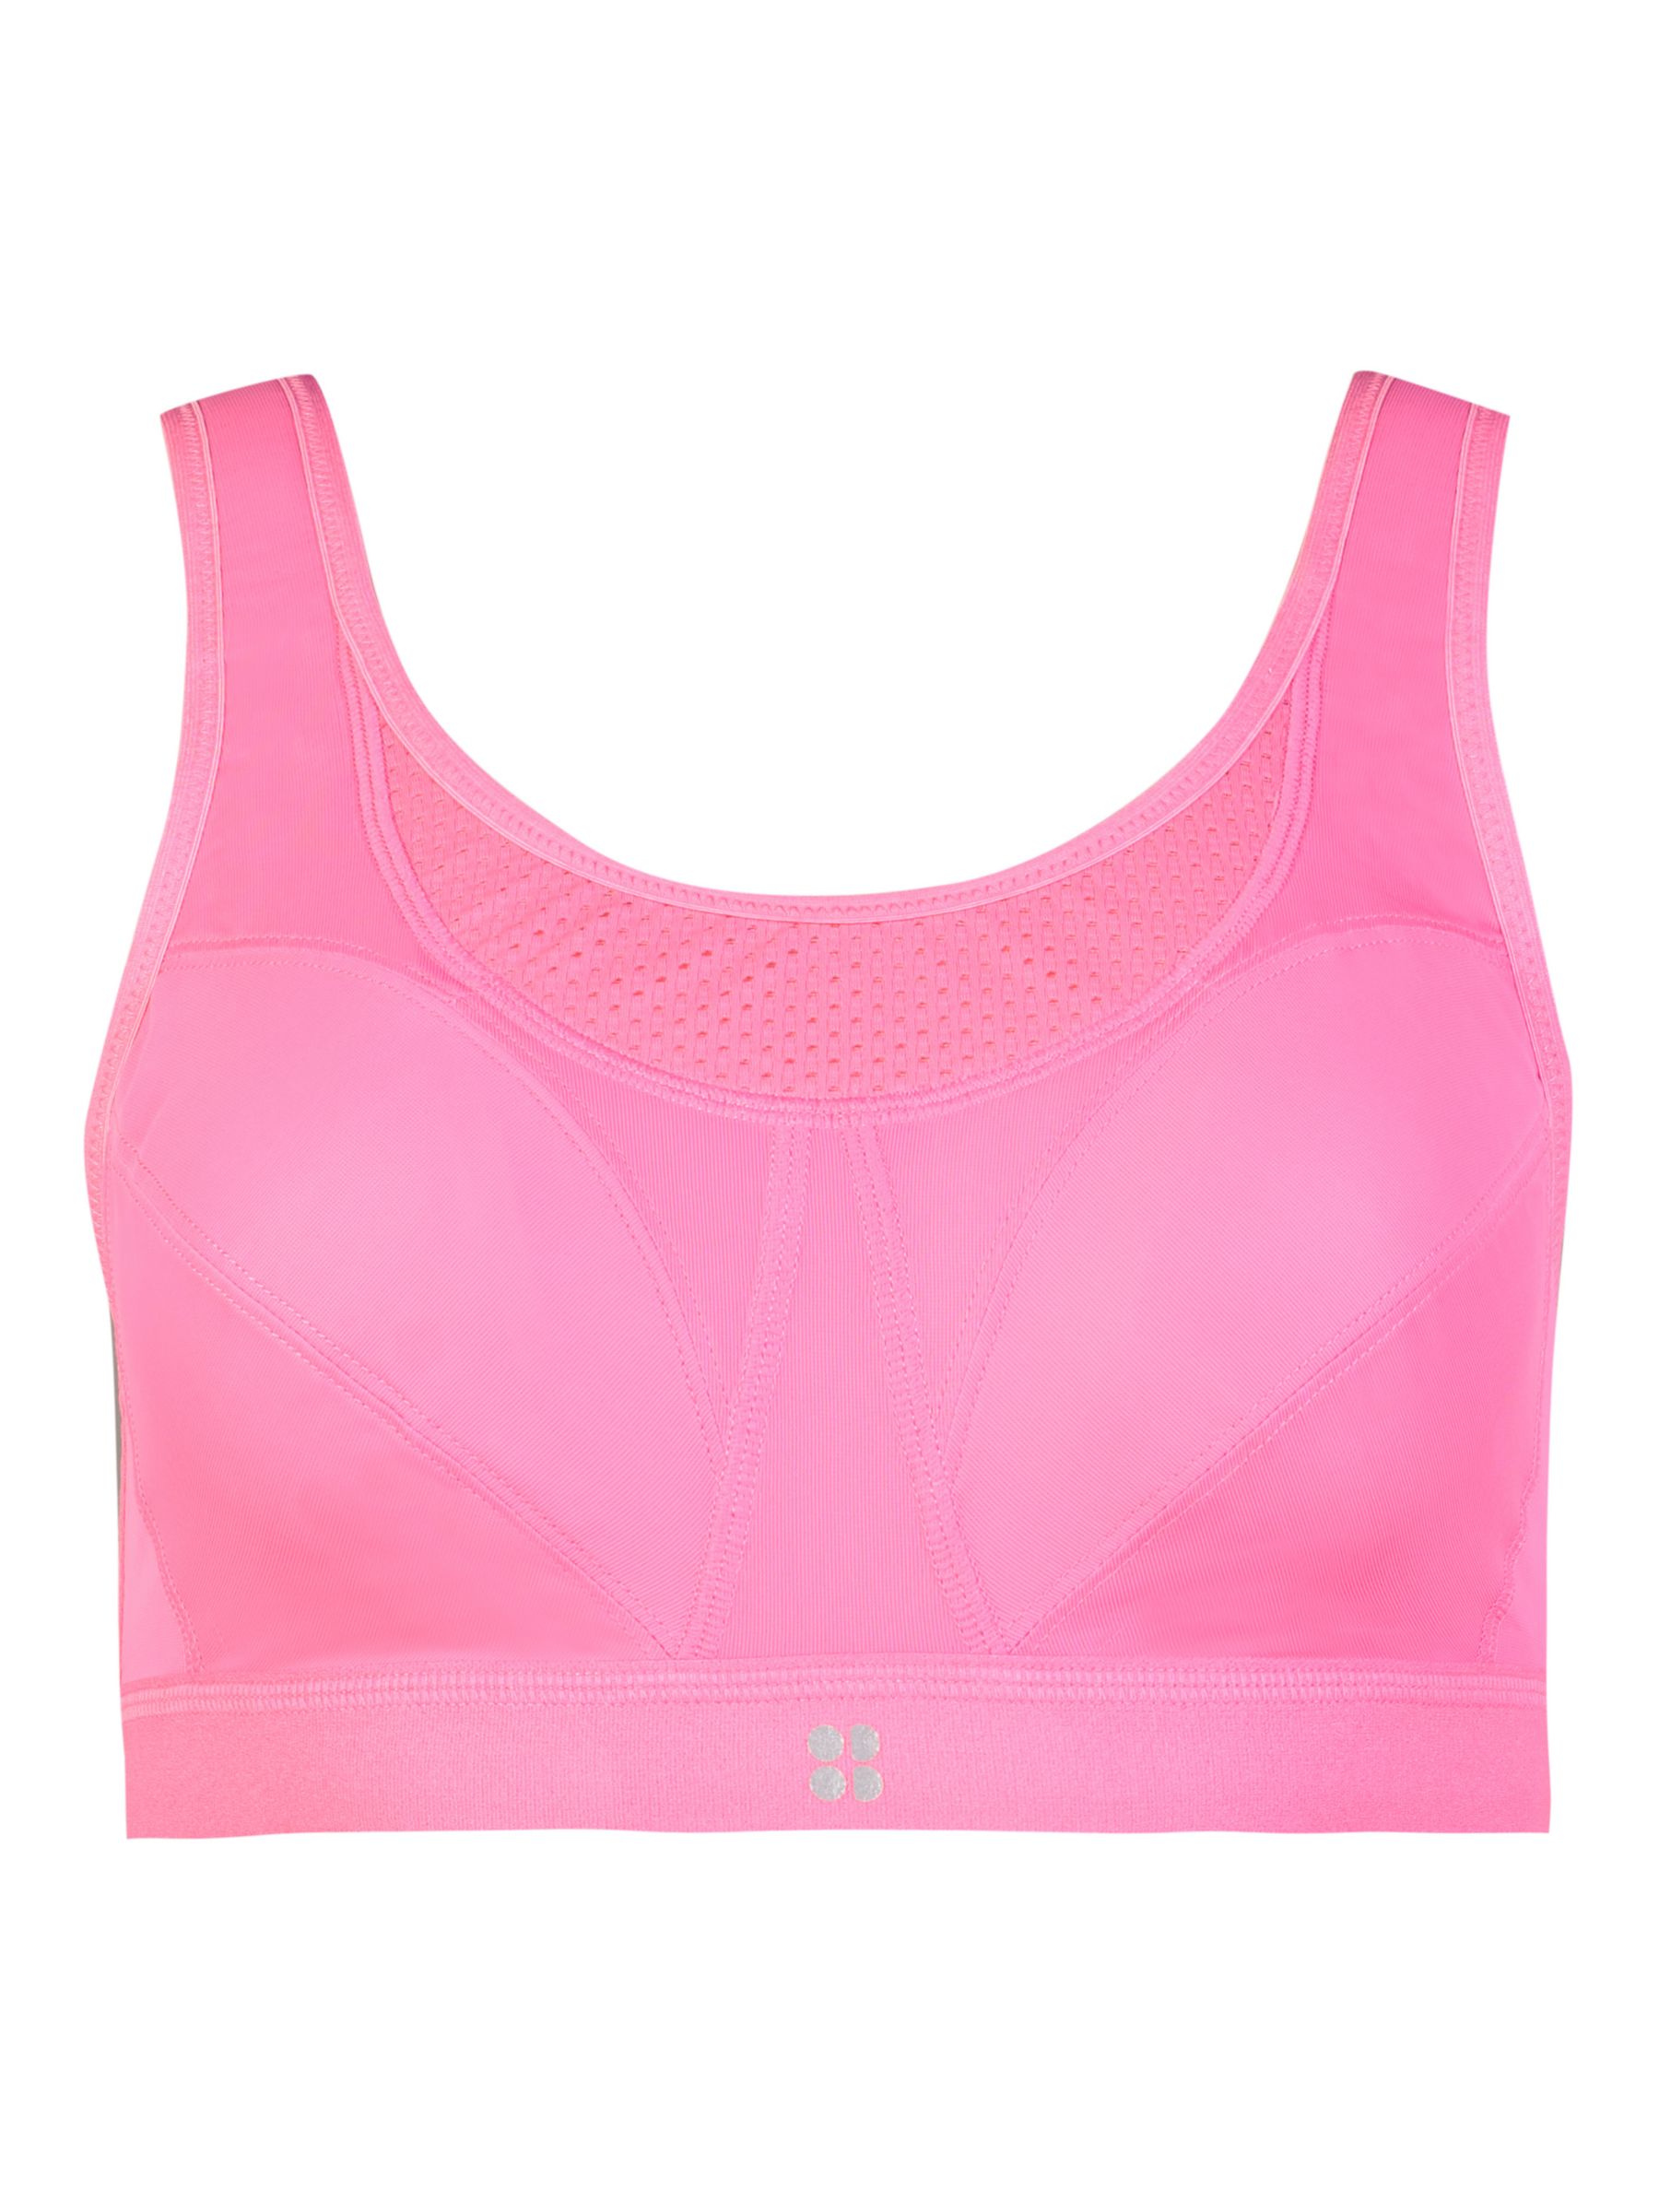 Sweaty Betty, Intimates & Sleepwear, Nwt Sweaty Betty Stamina Longline  Sports Bra In Blush Pink